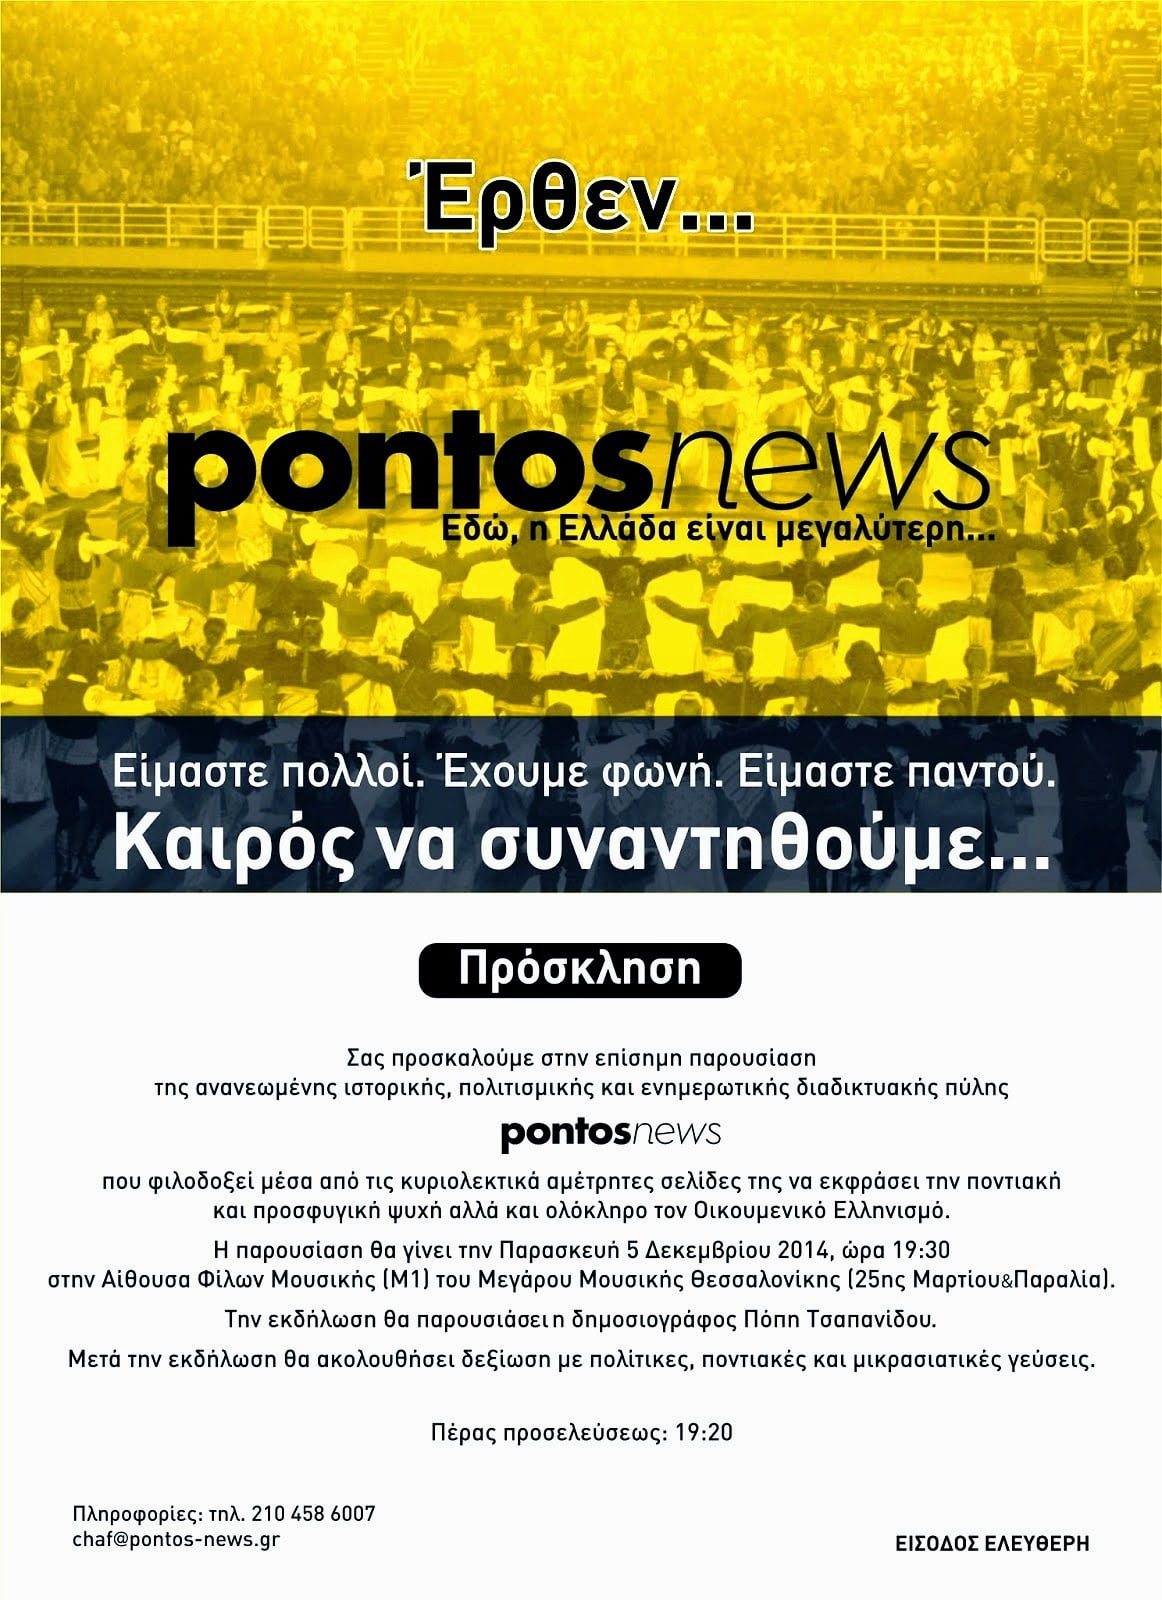 Παρασκευή 5 Δεκεμβρίου η παρουσίαση του pontosnews στη Θεσσαλονίκη